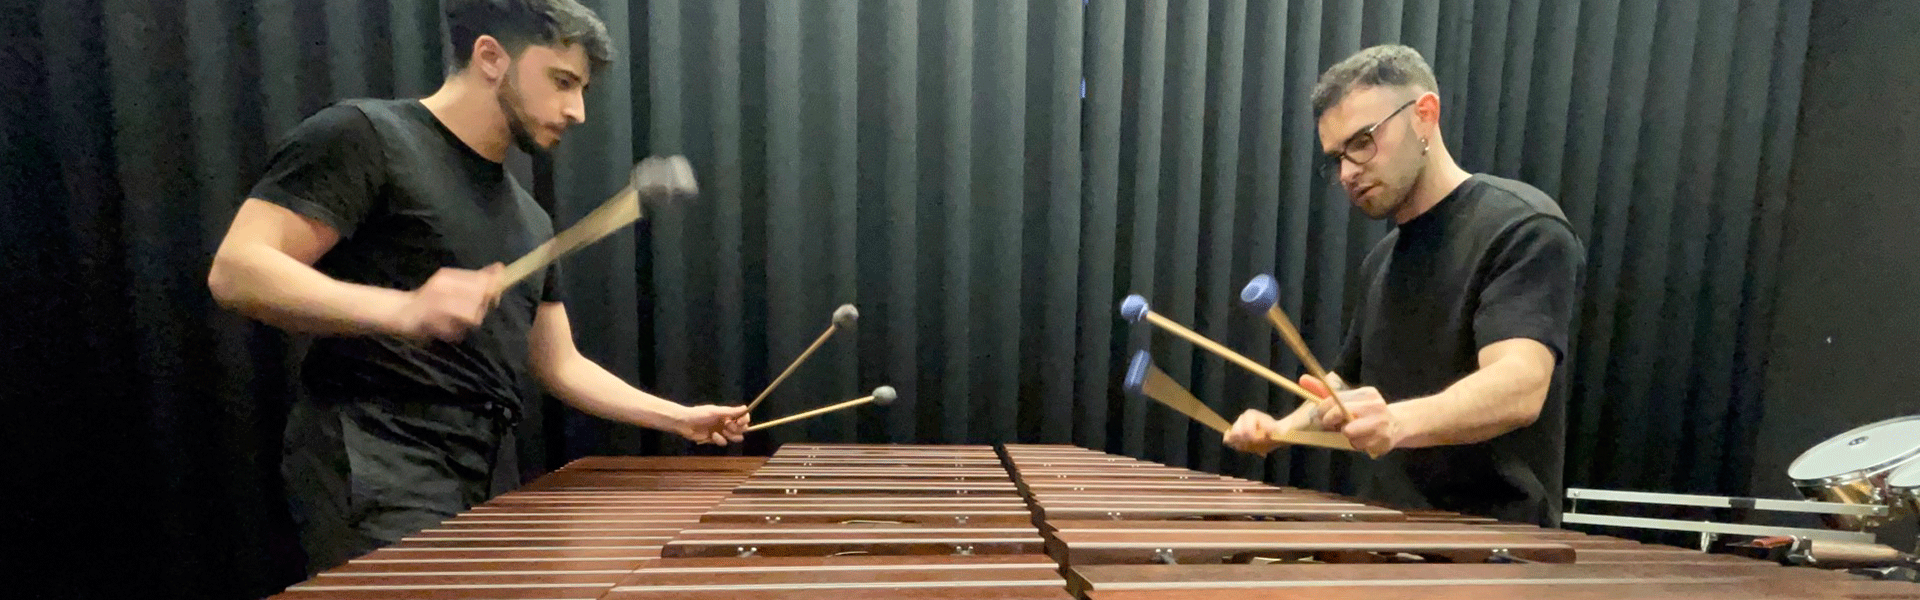 Fourteen Drums